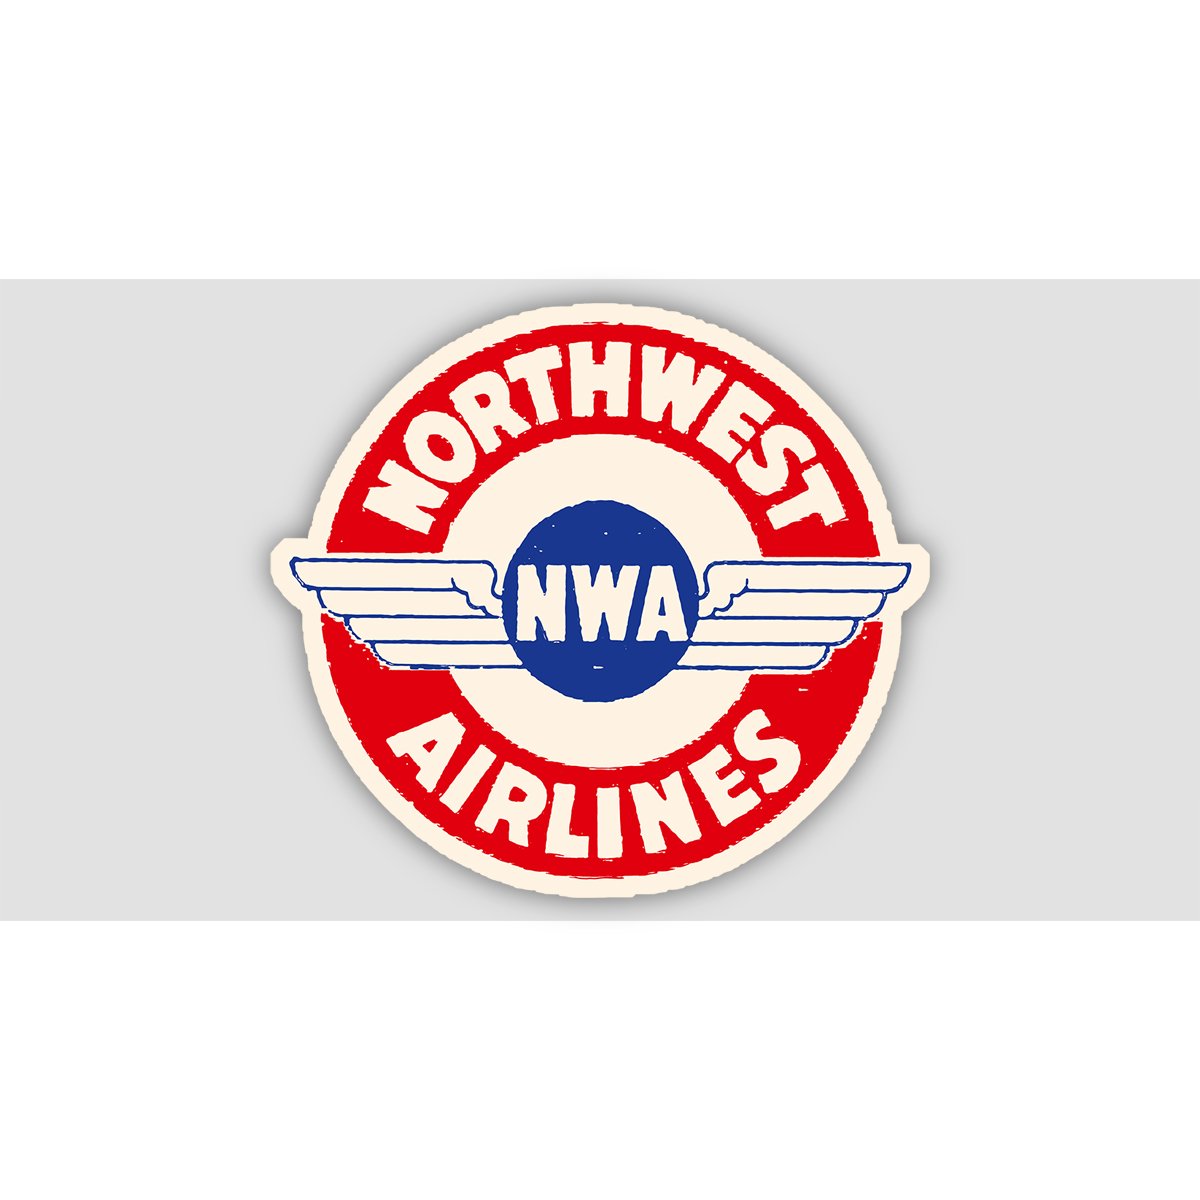 NORTHWEST AIRLINES RETRO Sticker